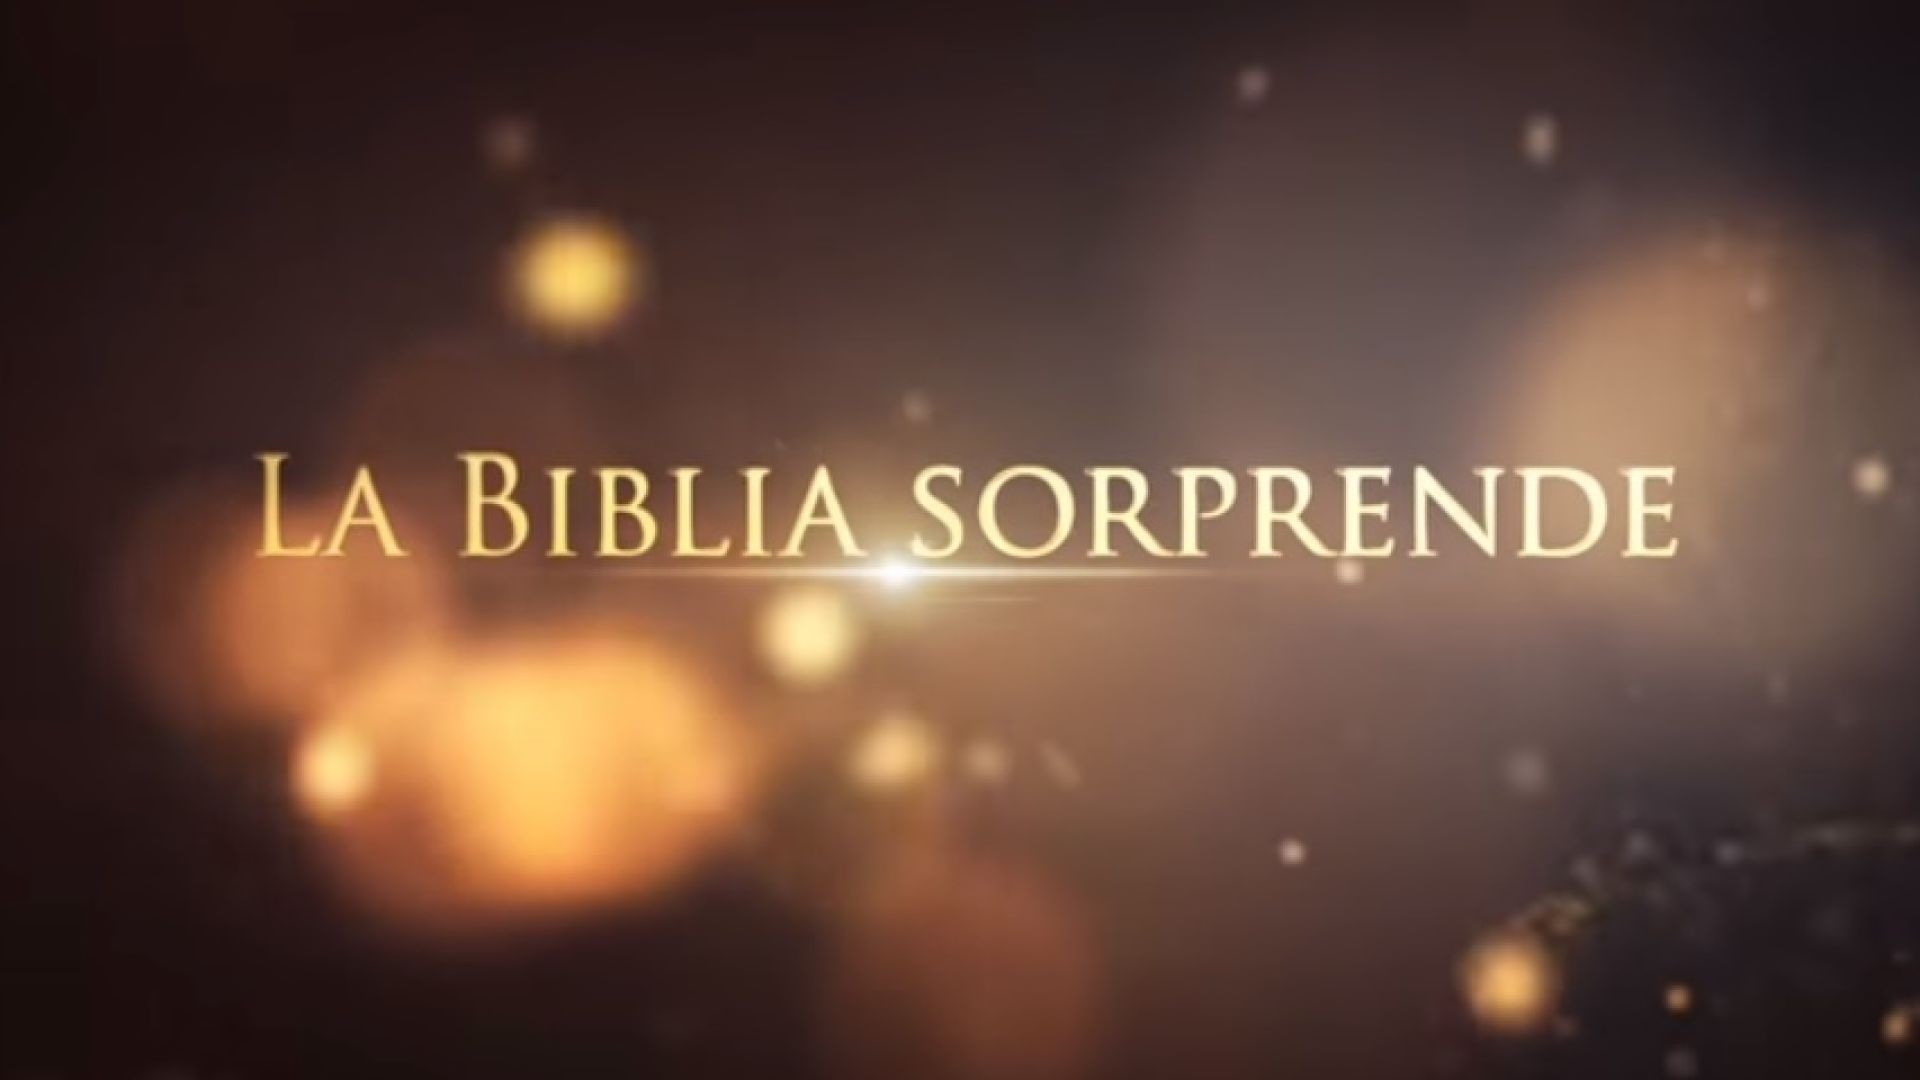 18 El planeta moribundo | La Biblia Sorprende 1ra temporada - Juan Surroca